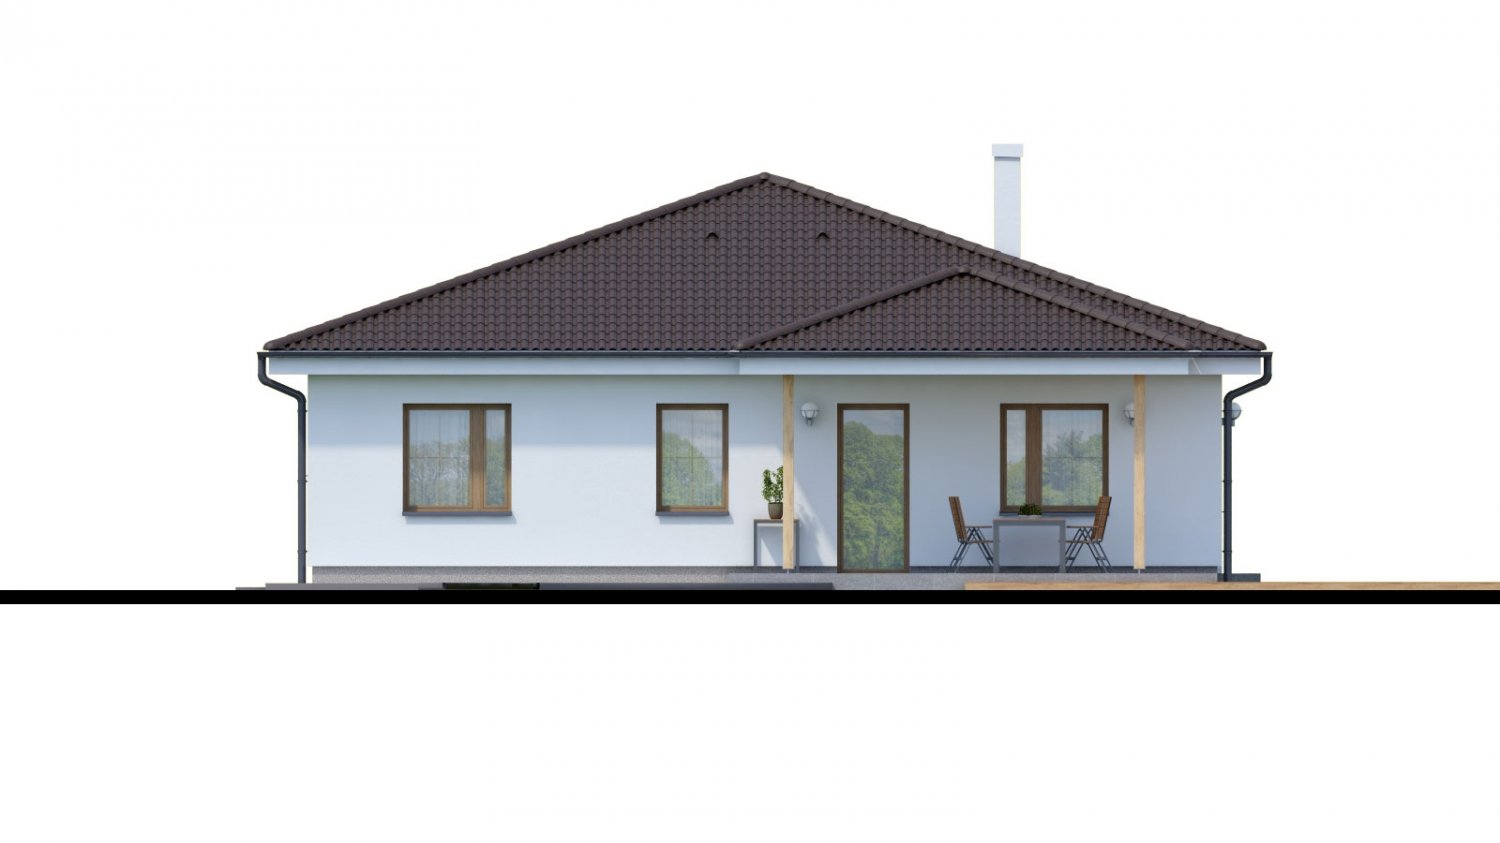 Zrkadlový pohľad 3. - Jednoduchý 5-pokojový rodinný dům s valbovou střechou. Zpracovaný i ve virtuální realitě 3d.